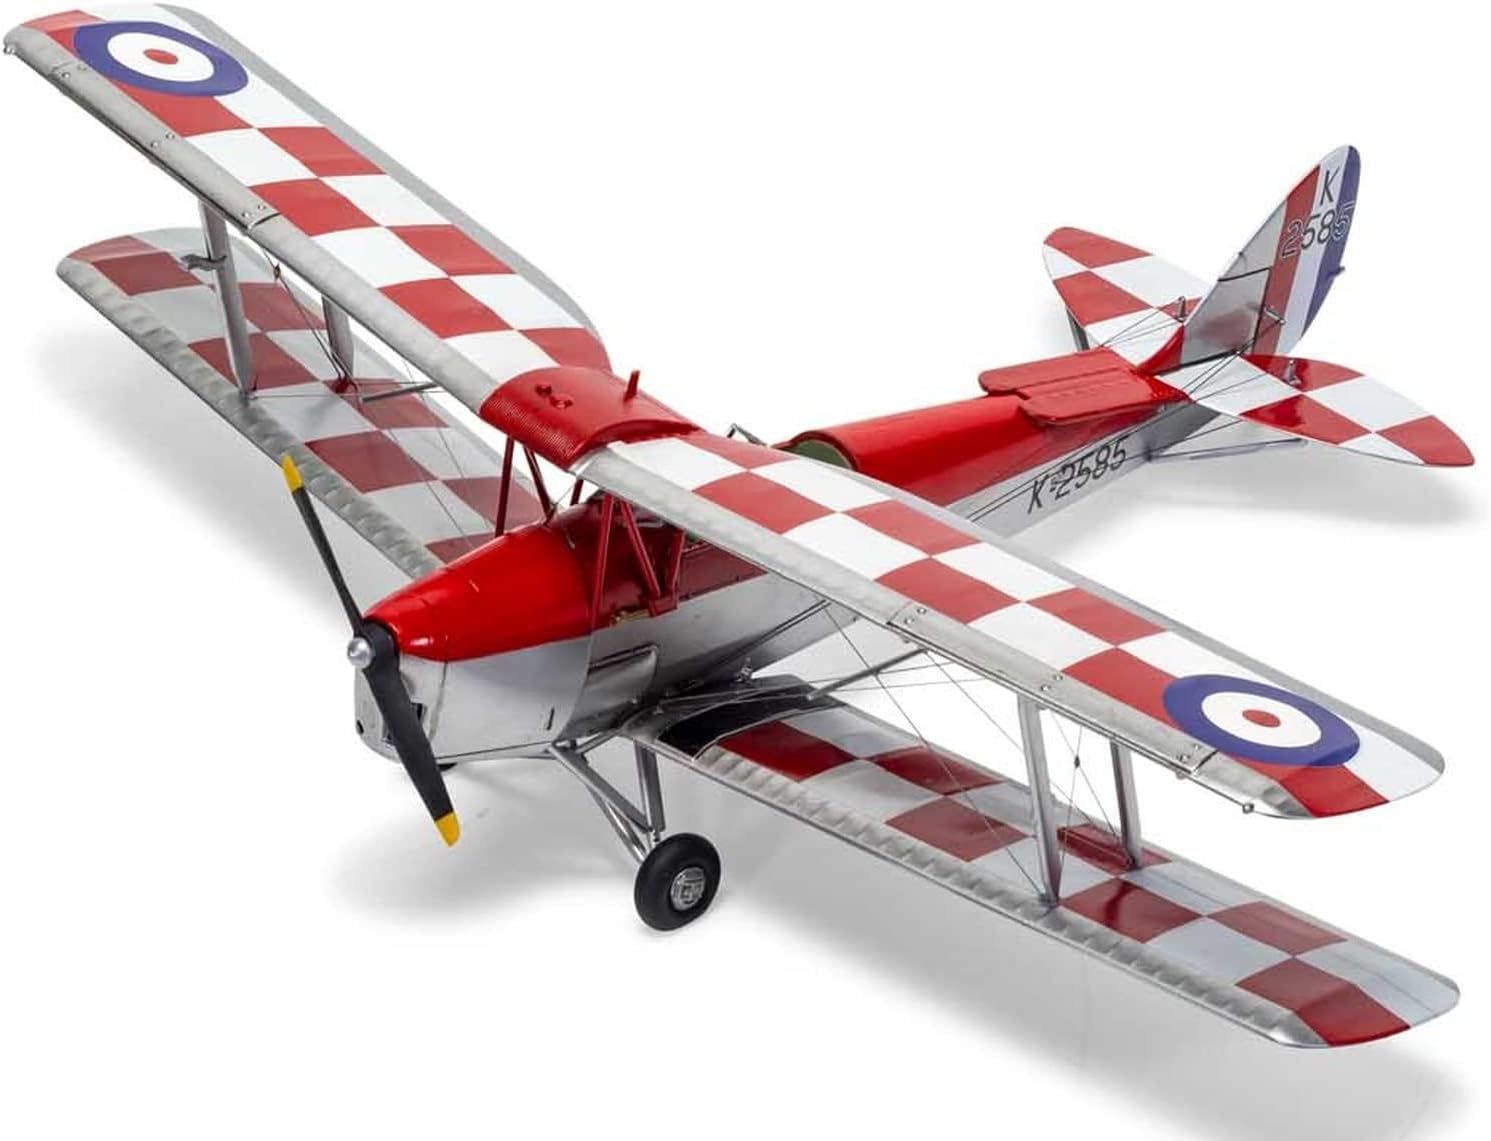 Airfix A04104 1:48 Scale De Havilland Tiger North Aircraft Model Kit